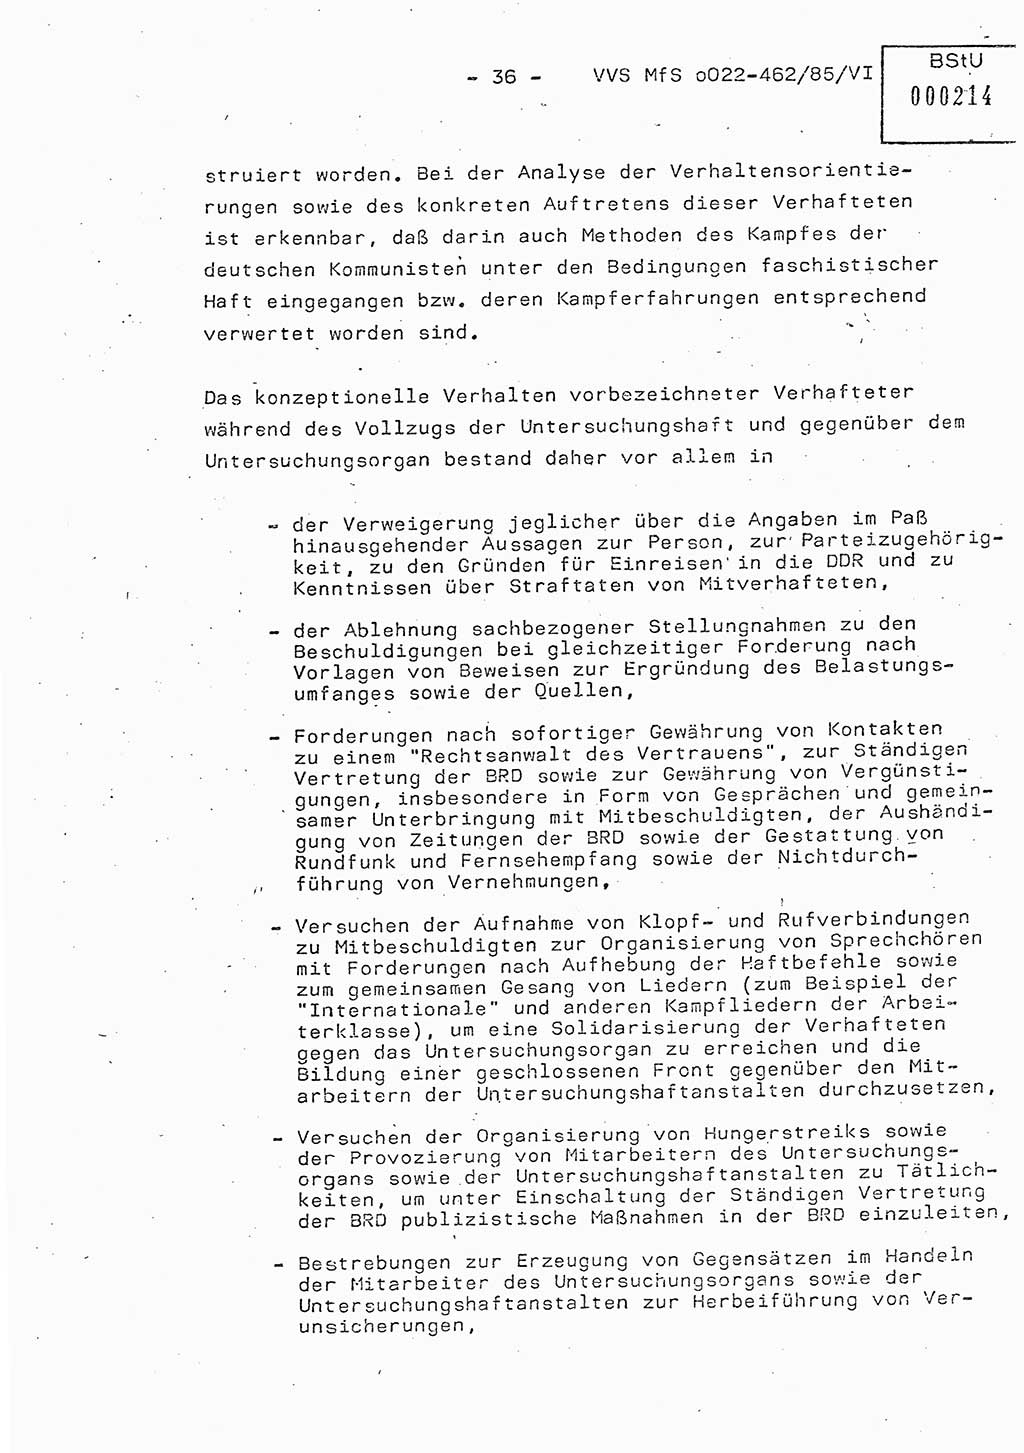 Der Untersuchungshaftvollzug im MfS, Schulungsmaterial Teil Ⅵ, Ministerium für Staatssicherheit [Deutsche Demokratische Republik (DDR)], Abteilung (Abt.) ⅩⅣ, Vertrauliche Verschlußsache (VVS) o022-462/85/Ⅵ, Berlin 1985, Seite 36 (Sch.-Mat. Ⅵ MfS DDR Abt. ⅩⅣ VVS o022-462/85/Ⅵ 1985, S. 36)